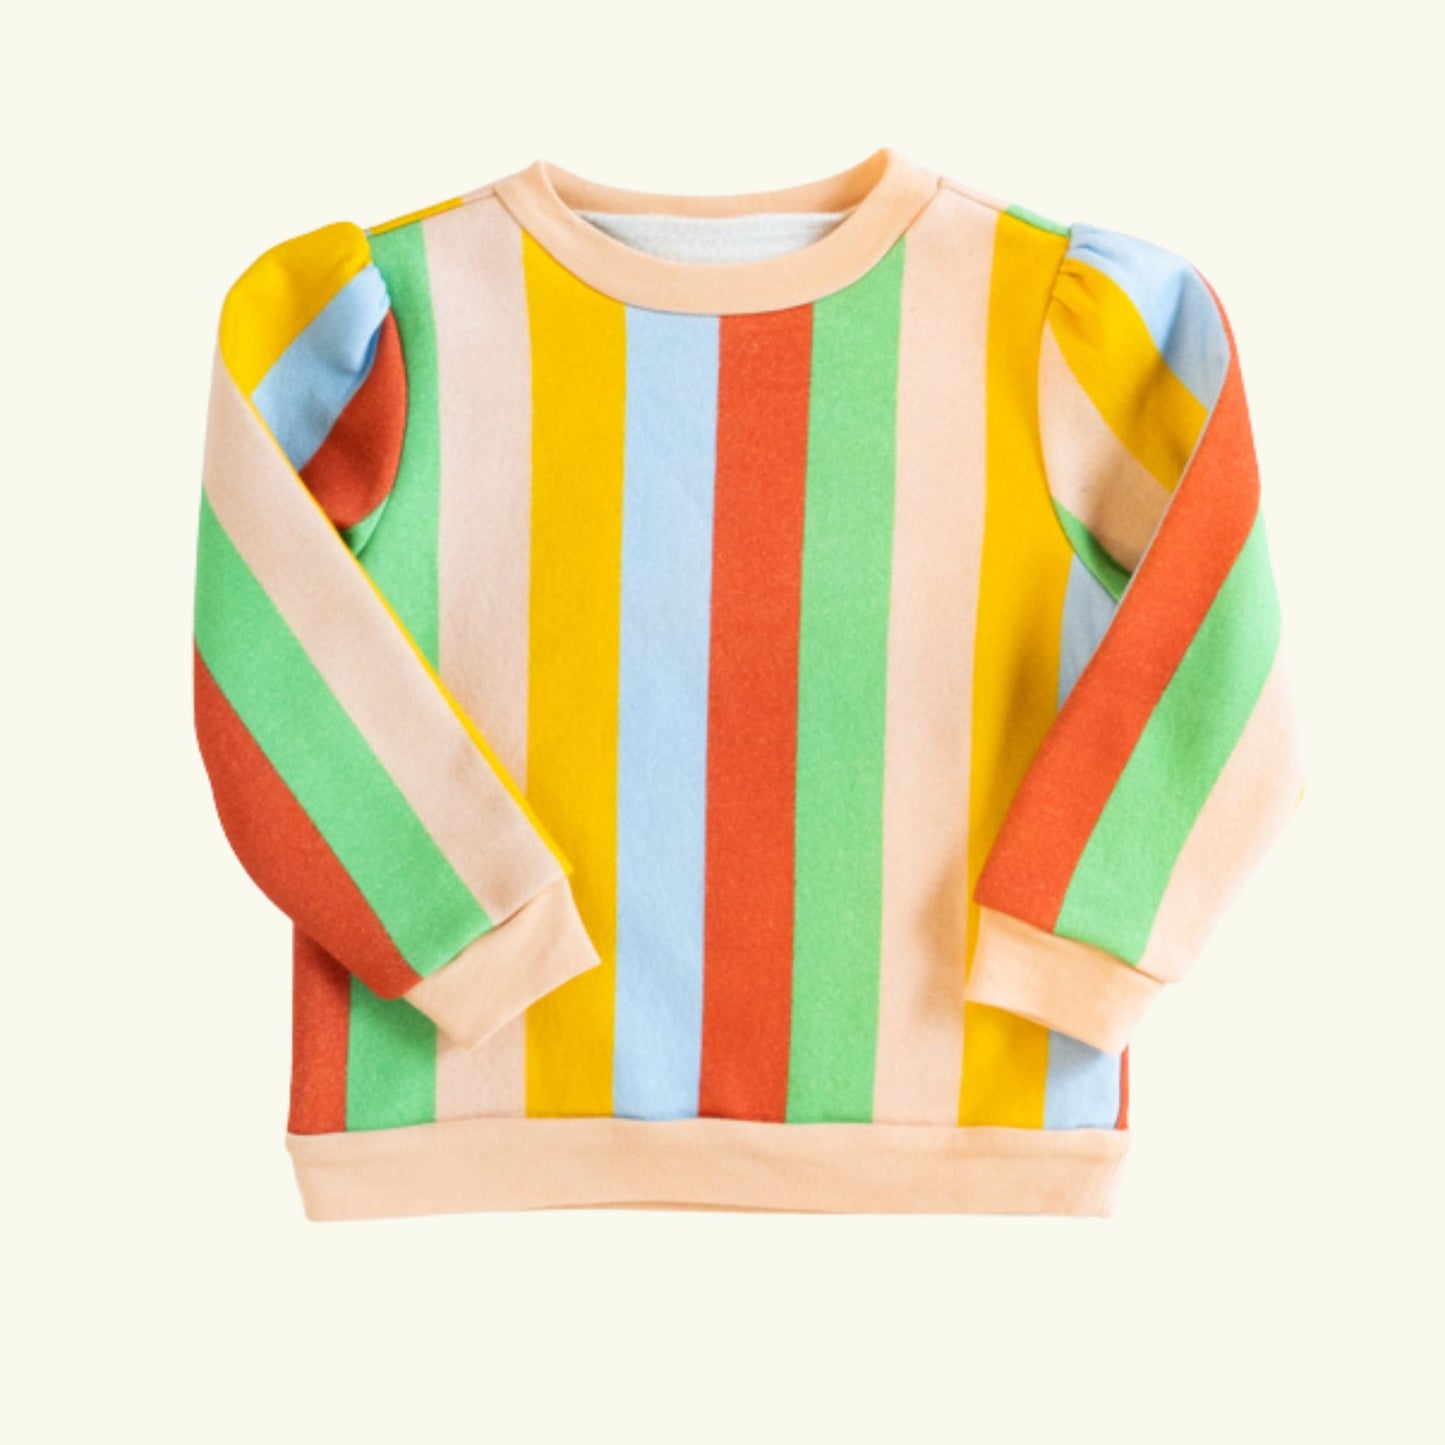 Power Puff Sweatshirt, Carnival Stripe